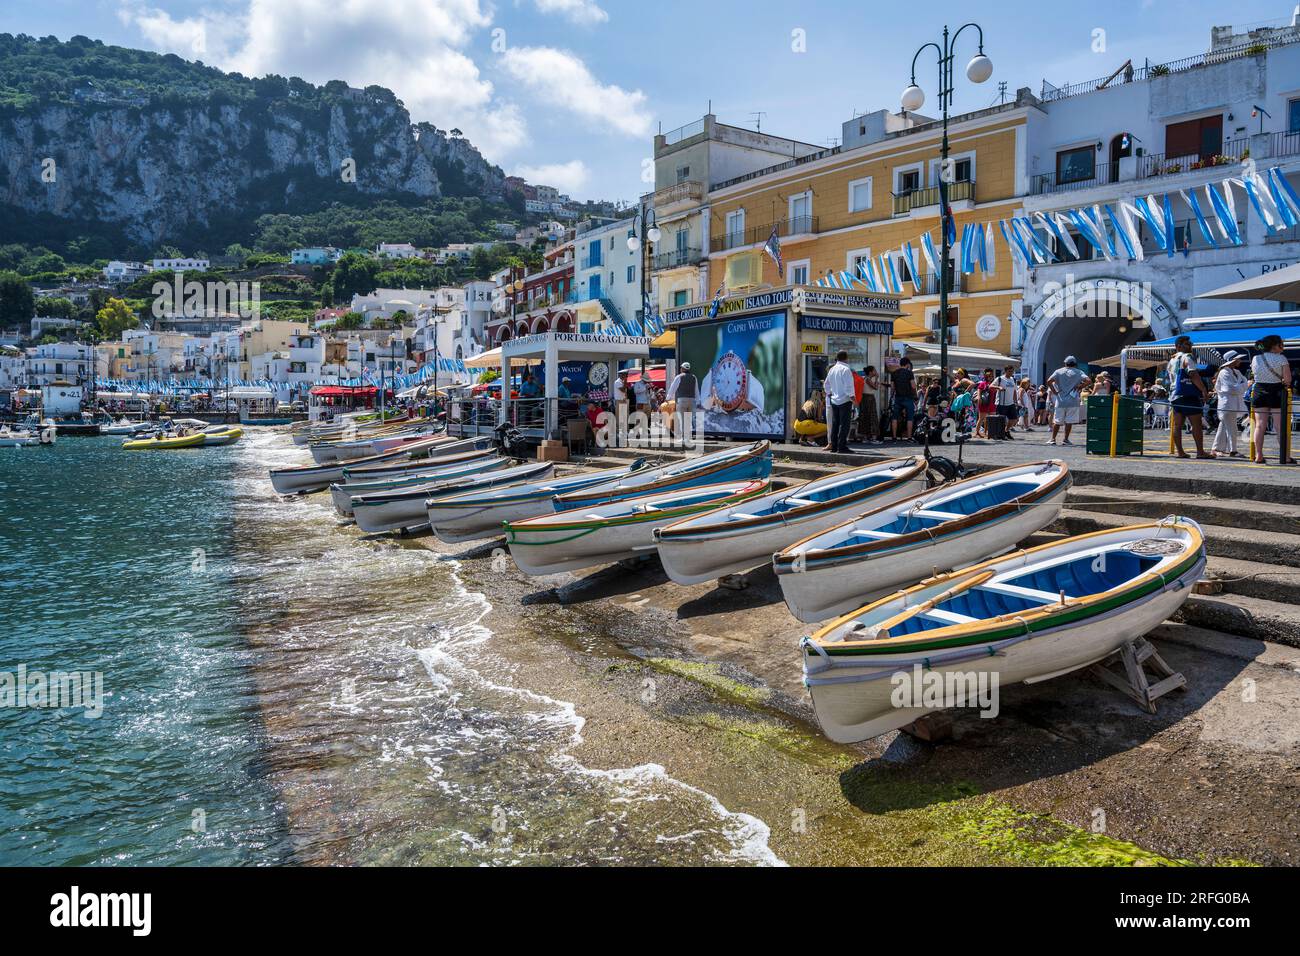 Marina Grande front de mer sur l'île de Capri dans le golfe de Naples au large de la péninsule de Sorrente dans la région Campanie de l'Italie Banque D'Images